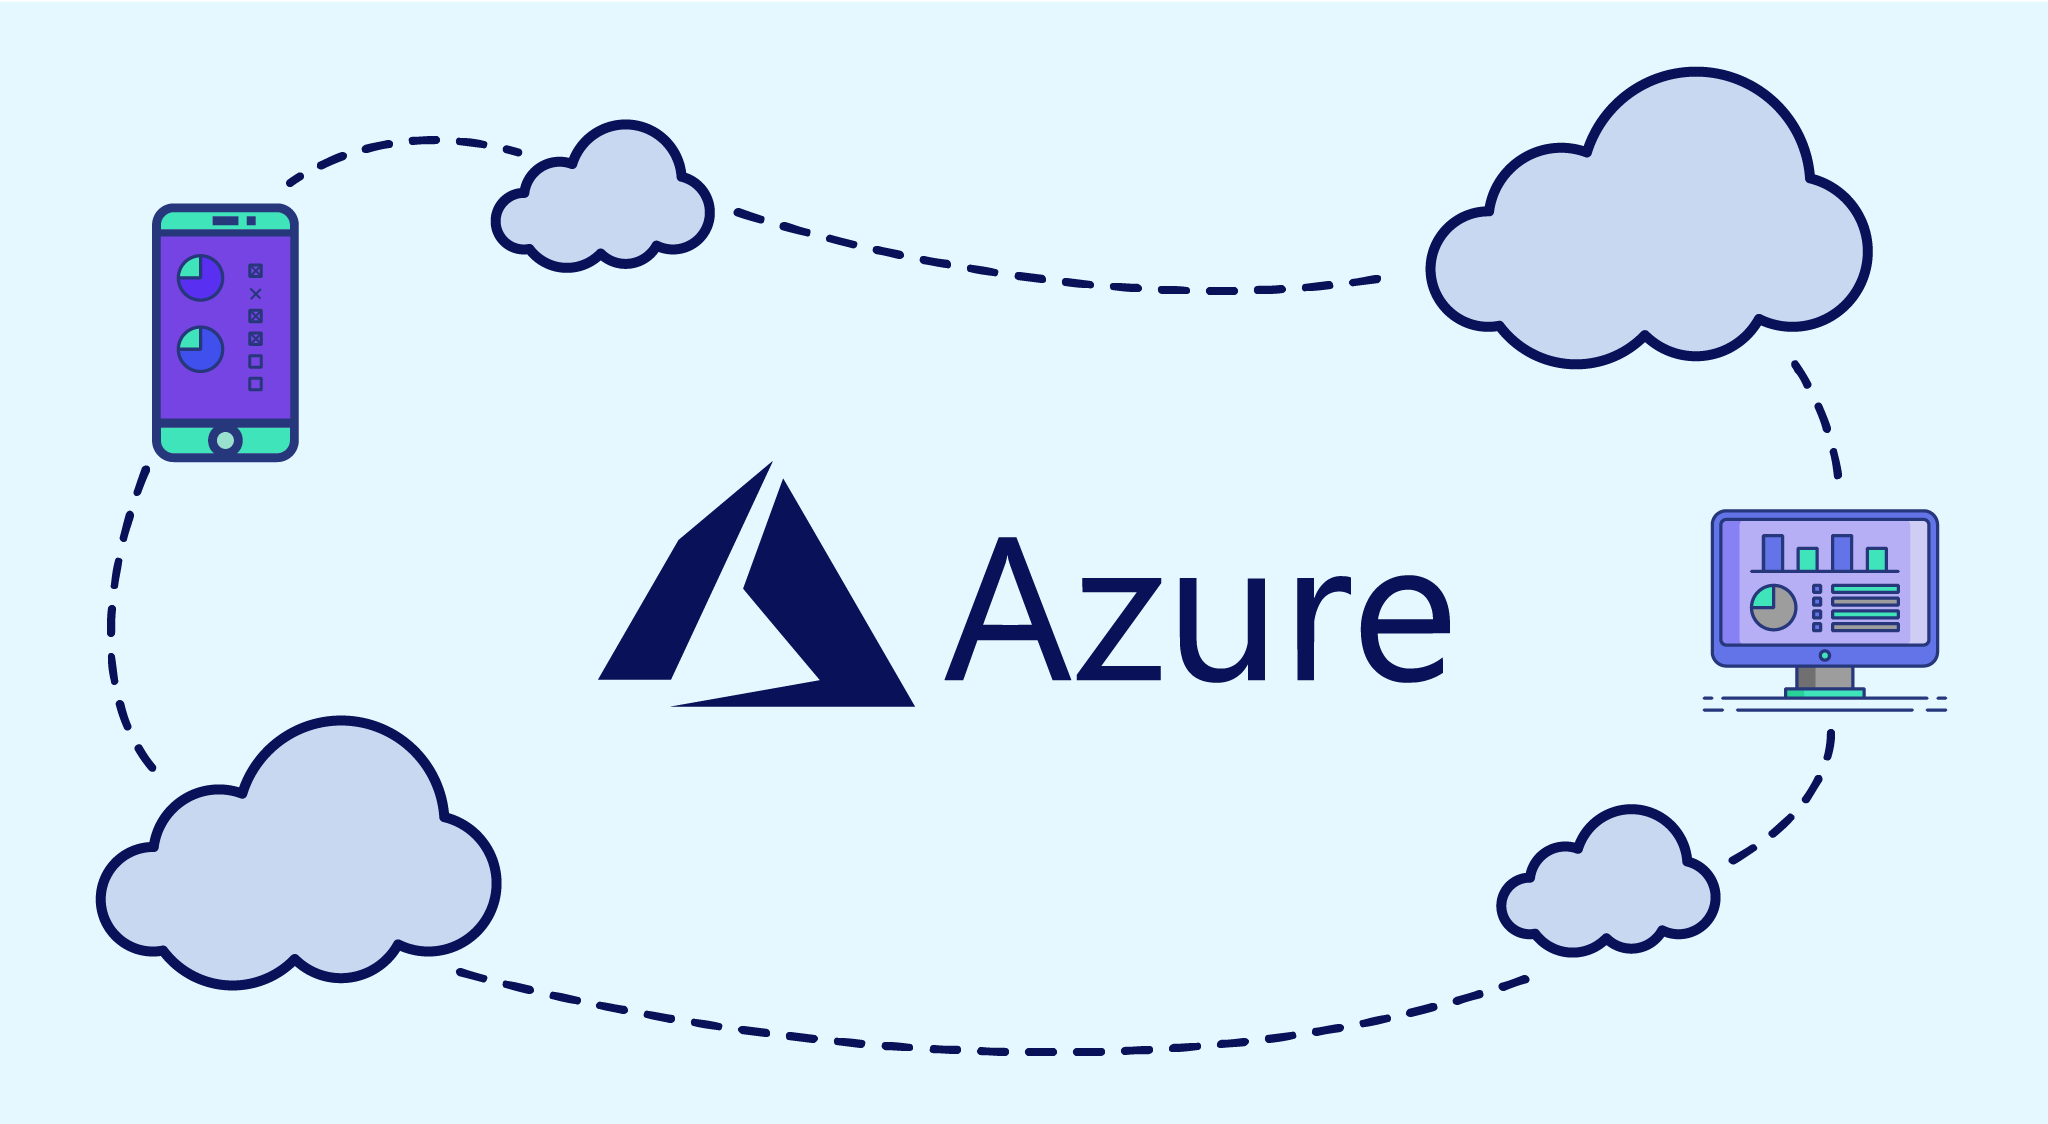 Exploring Machine Learning on Microsoft Azure